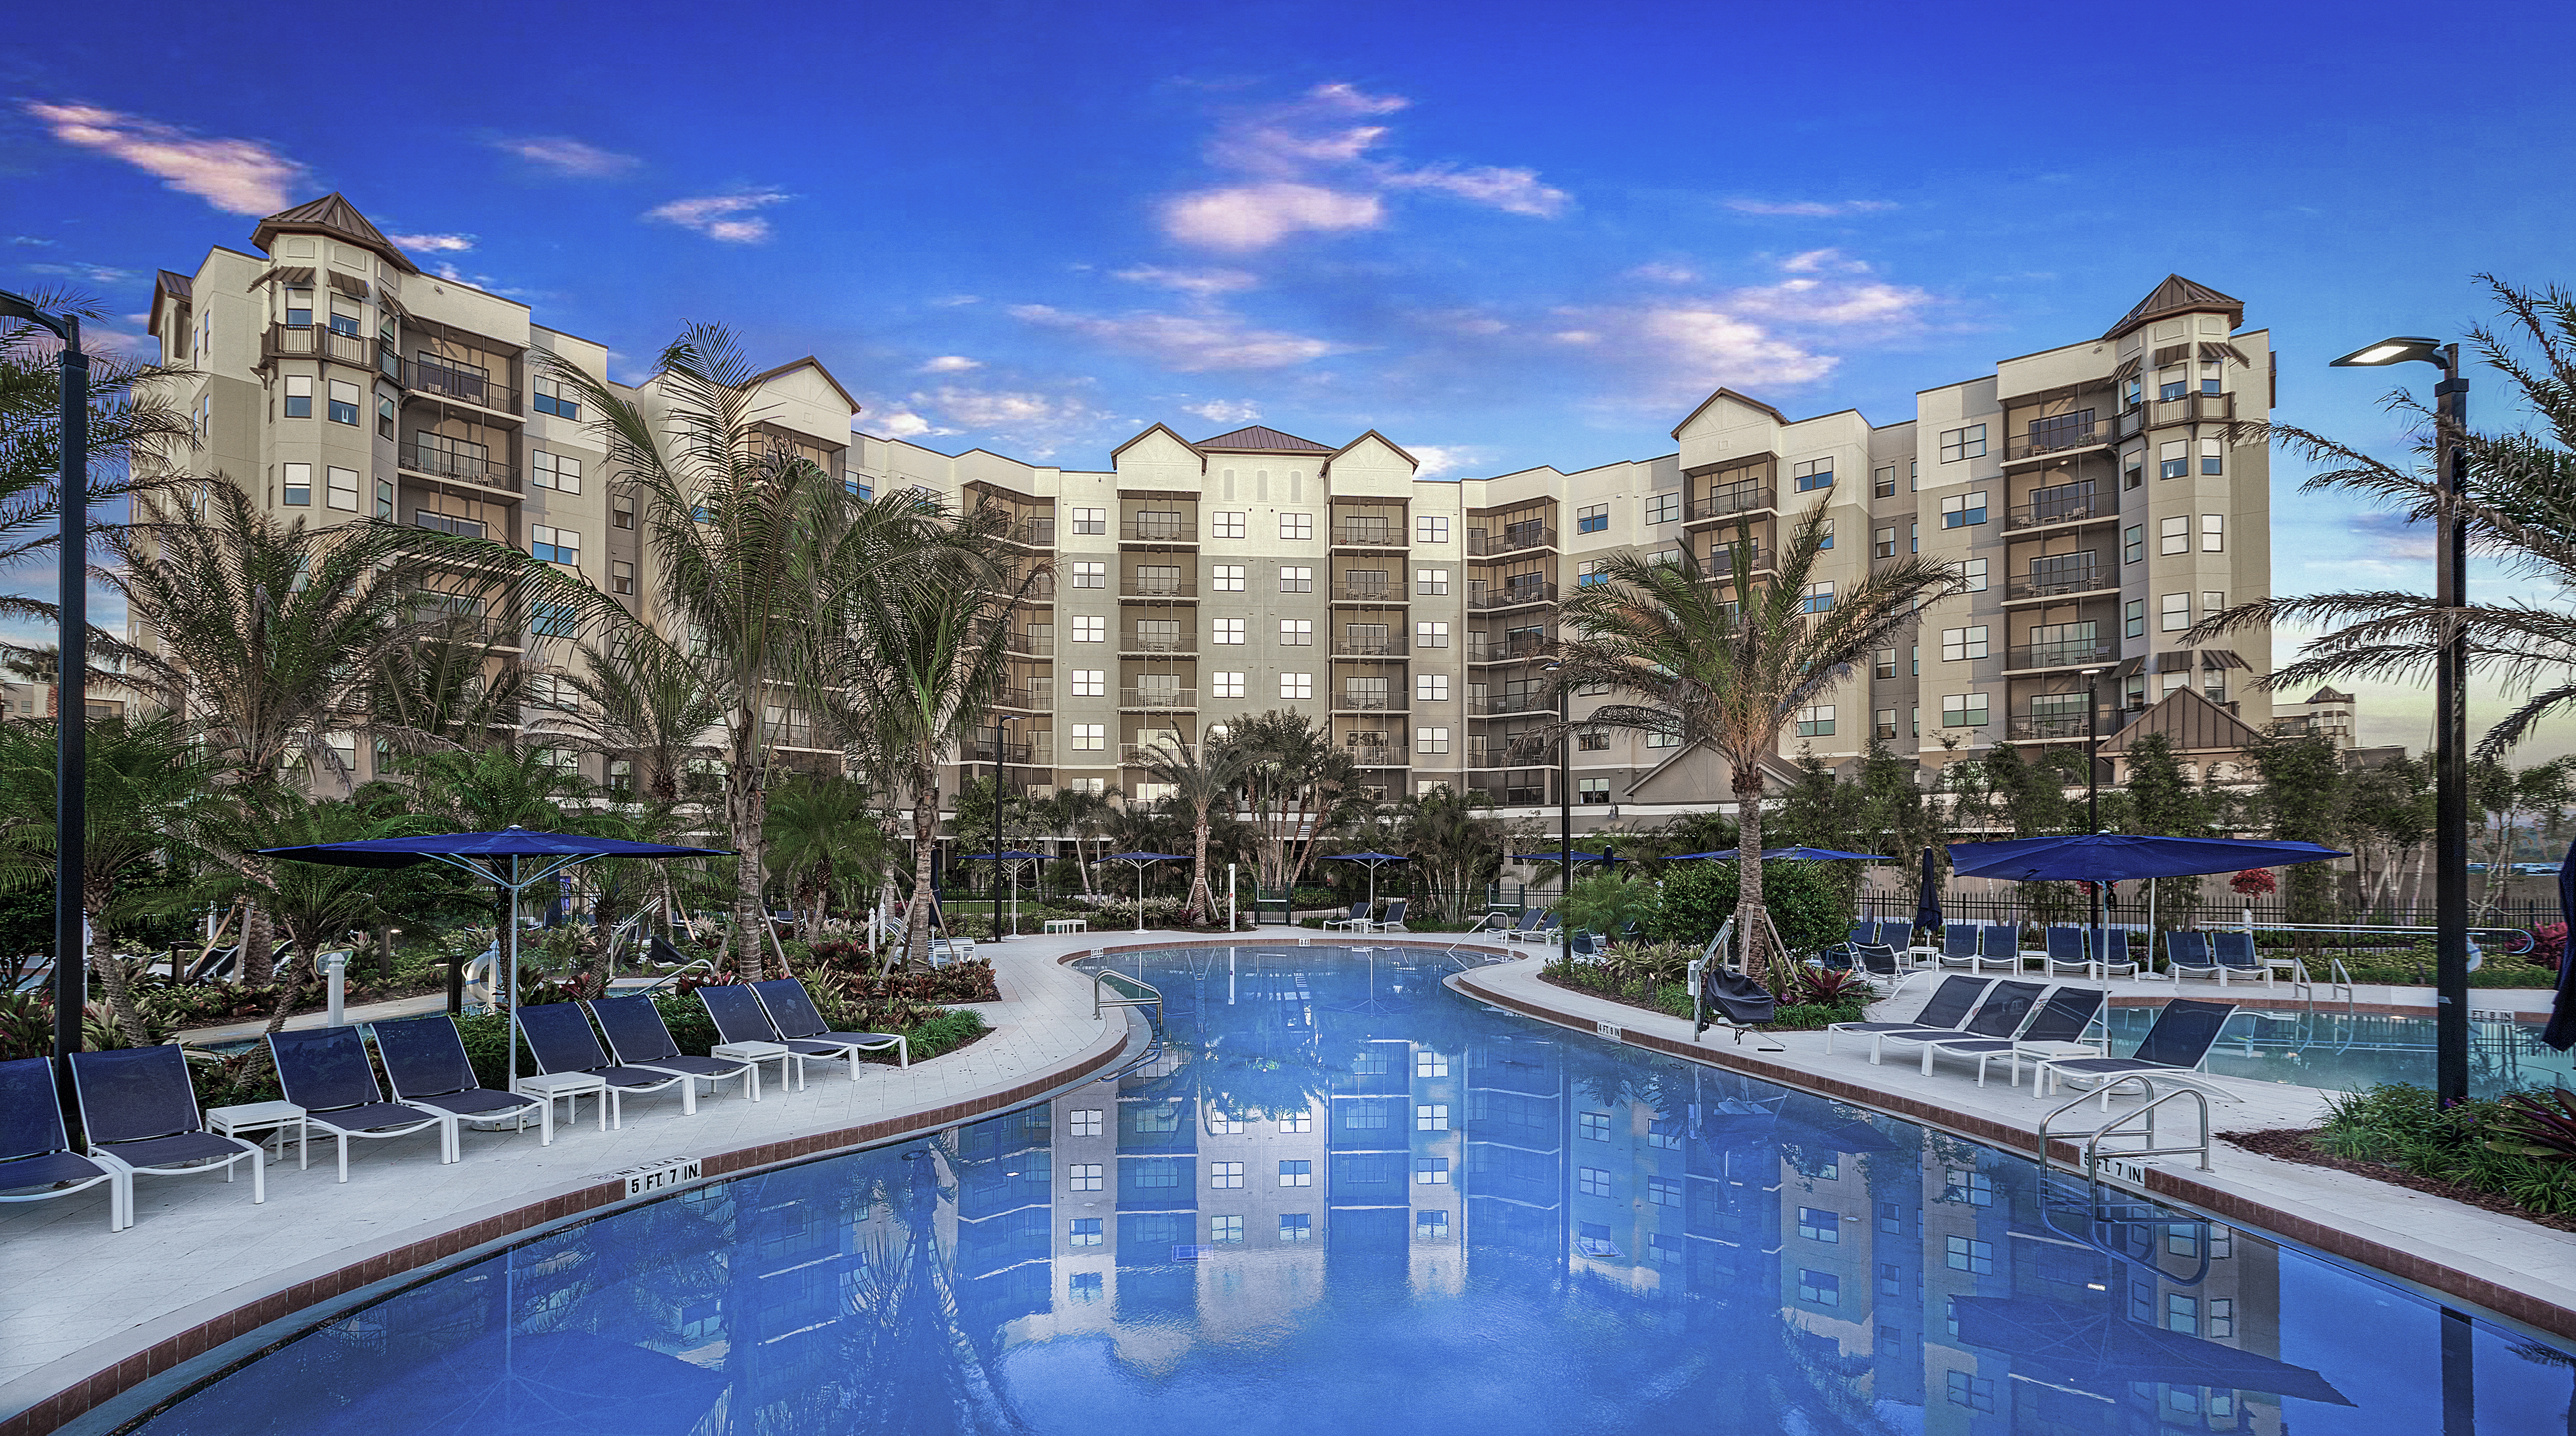 Condo Hotel Resort and Spa in Orlando